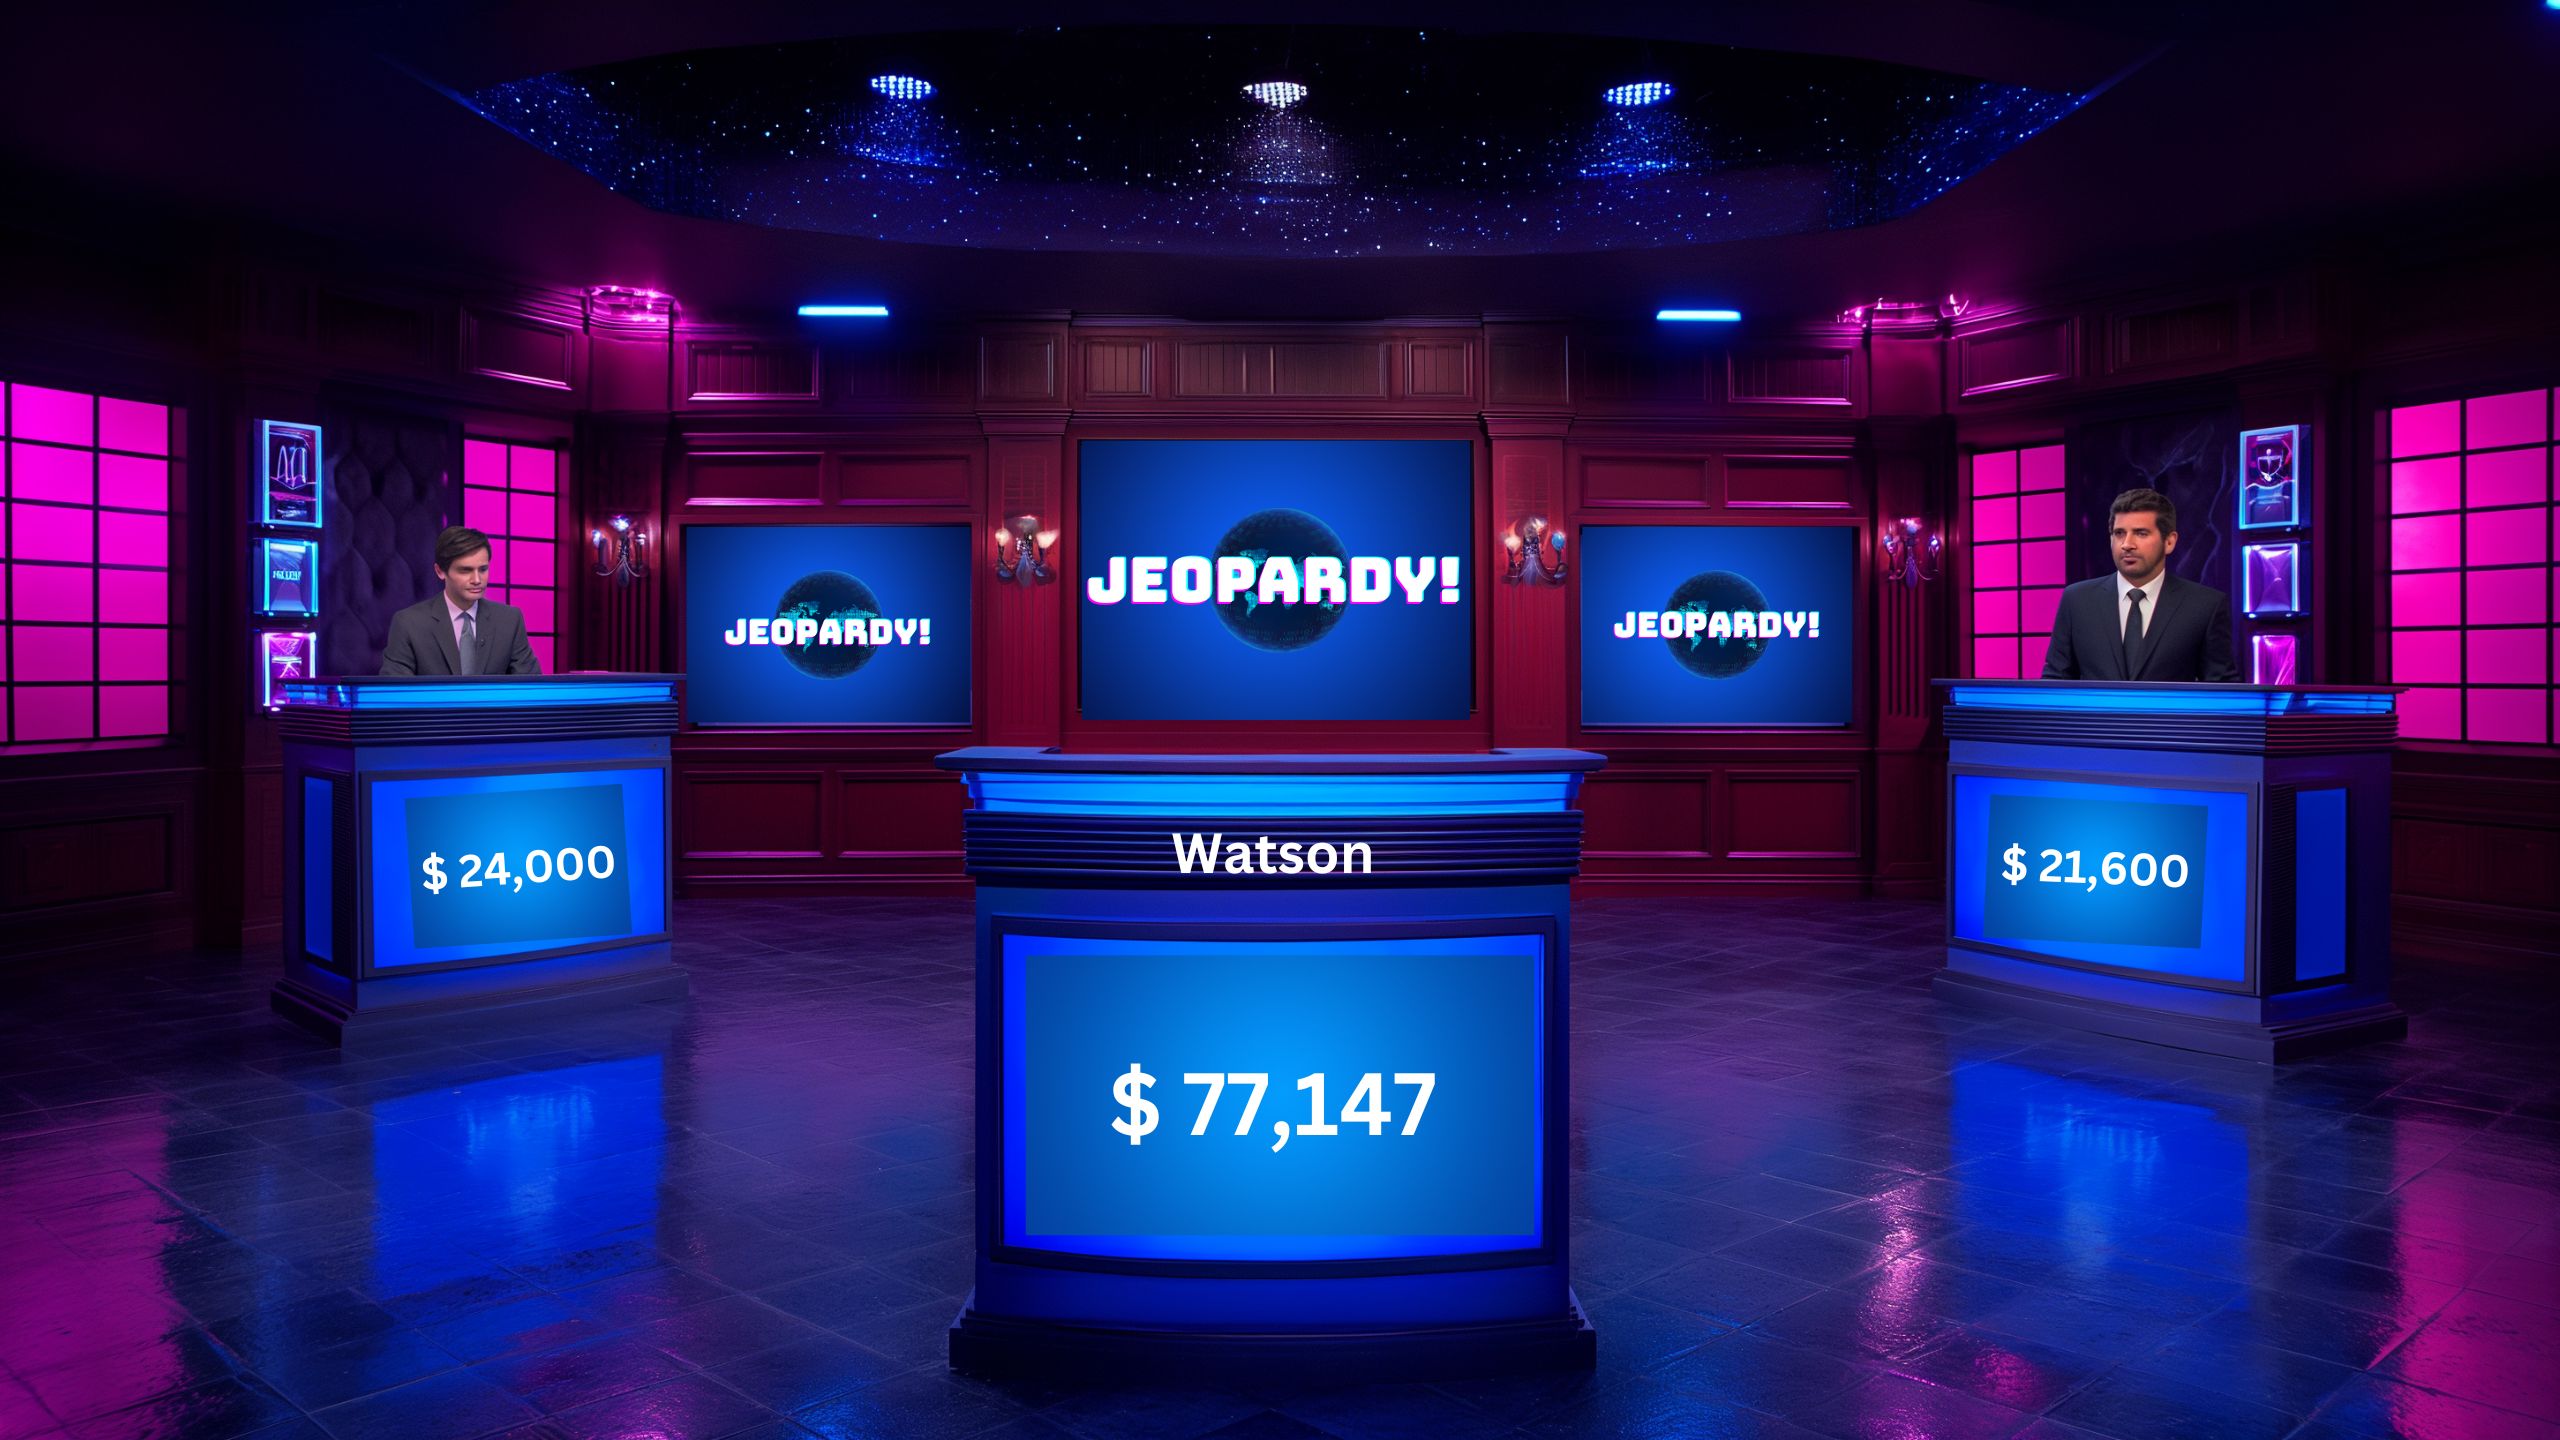 2011 Watson gewinnt Jeopardy Das Computerprogramm Watson gewinnt bei der Spielshow Jeopardy gegen zwei Quizmeister, die zuvor hohe Gewinne erspielt hatten.